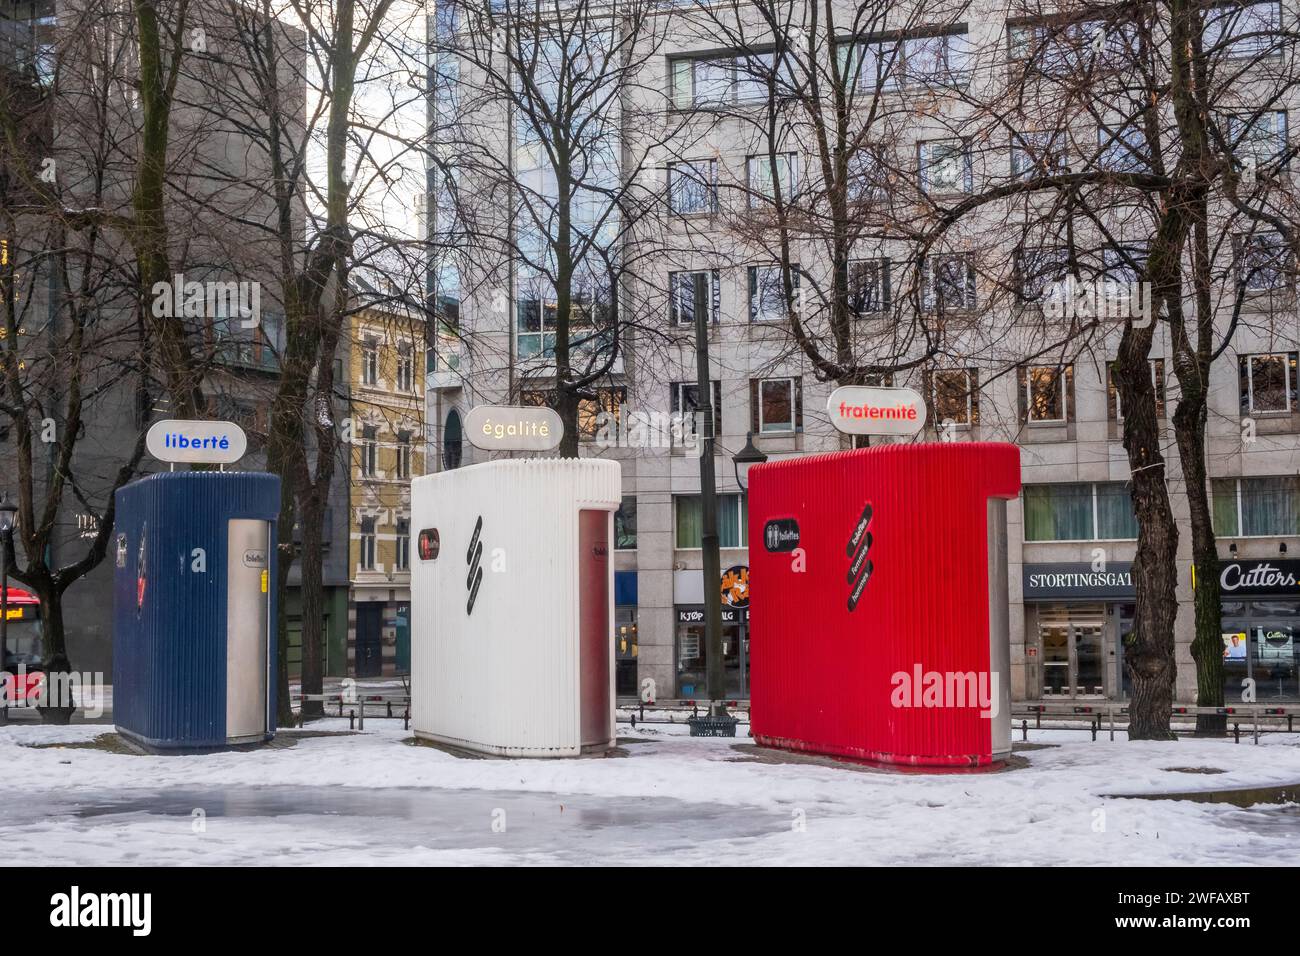 Öffentliche Toiletten "Liberté, egalité, fraternité" im Zentrum von Oslo, Norwegen Stockfoto